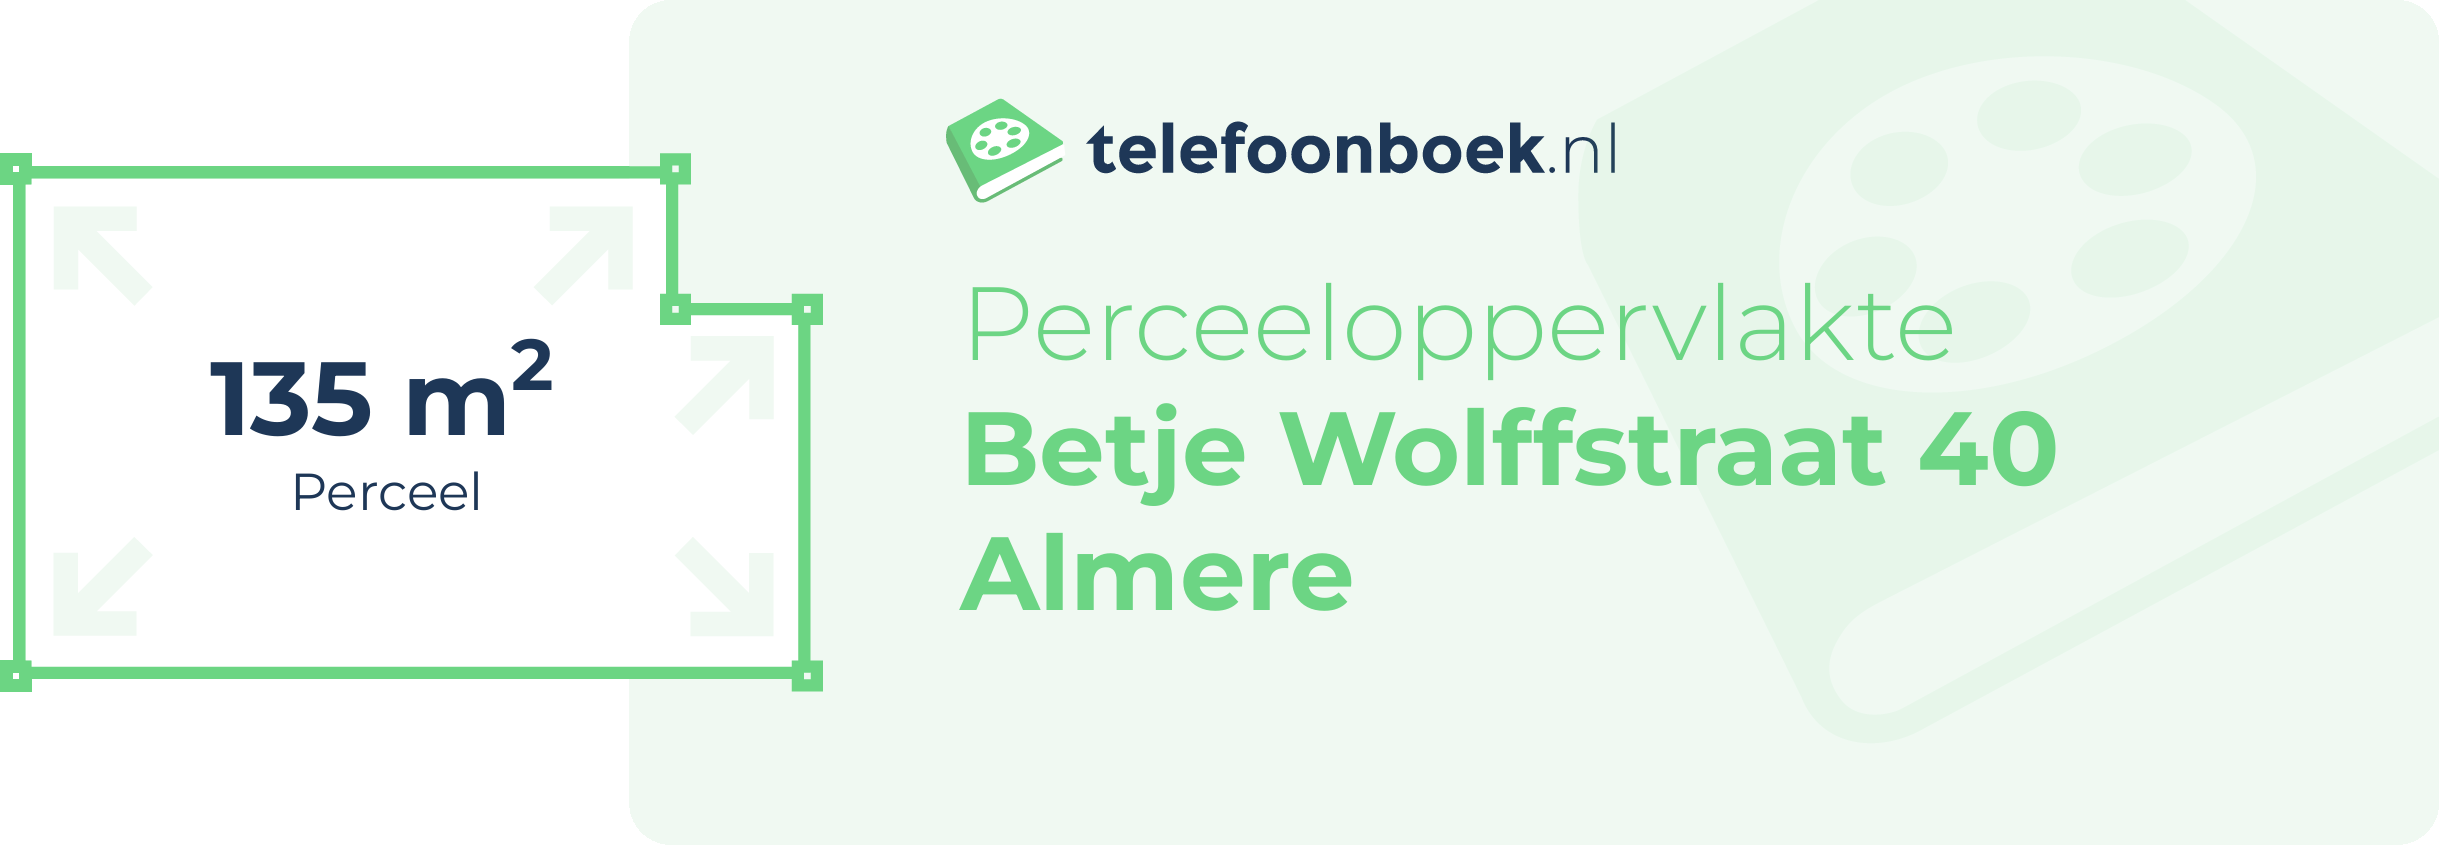 Perceeloppervlakte Betje Wolffstraat 40 Almere